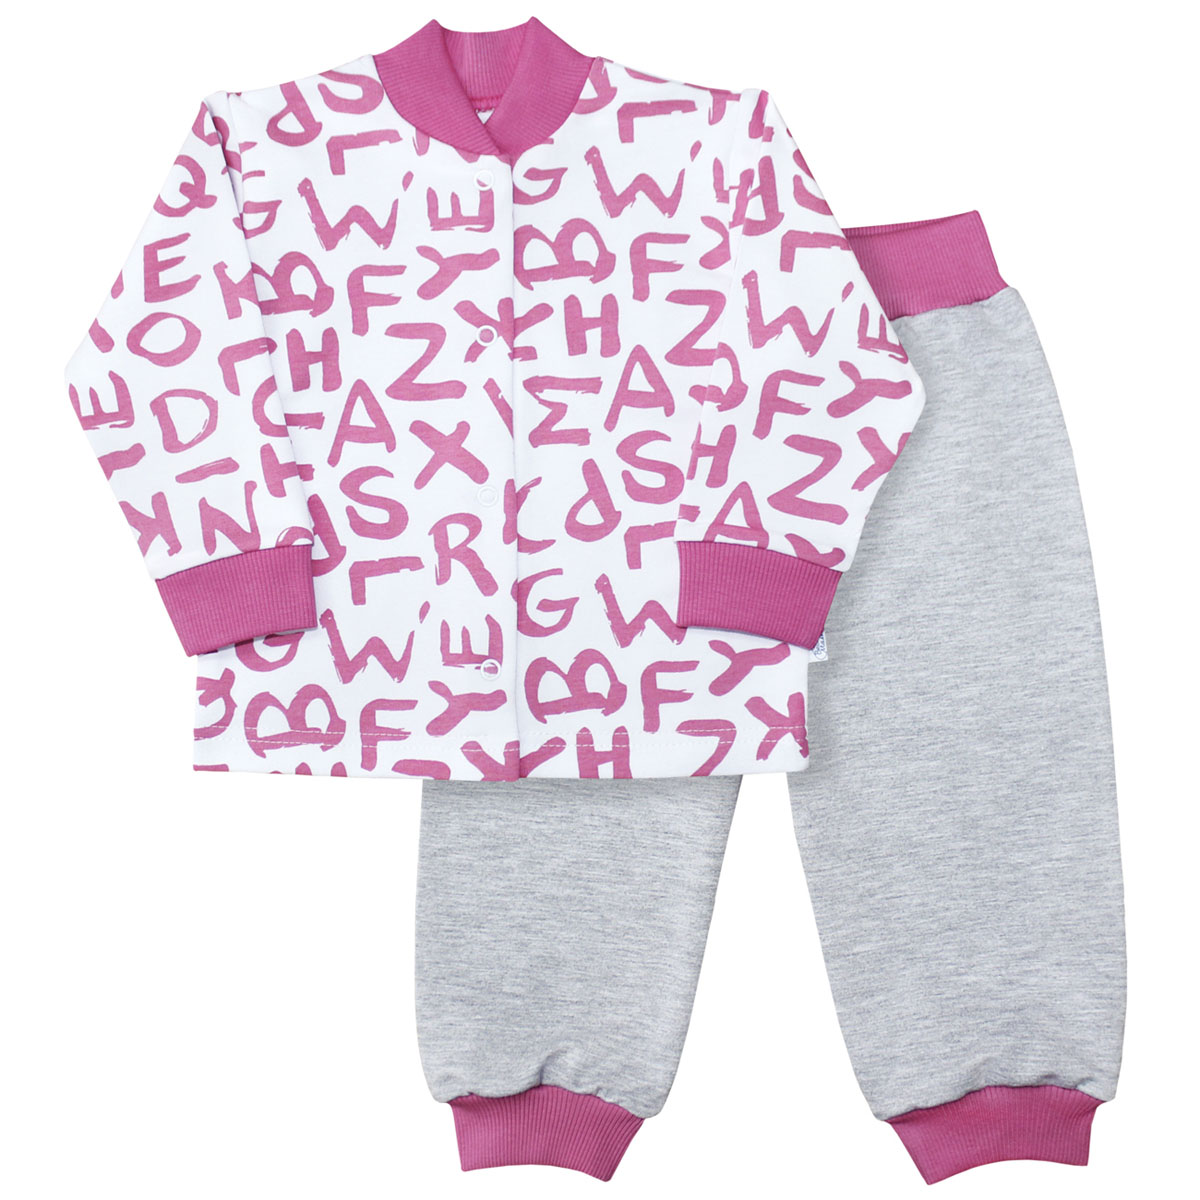 Комплект для девочки Веселый малыш Буквы: кофточка, брюки, цвет: розовый. 22136/142/бу-розовый. Размер 98